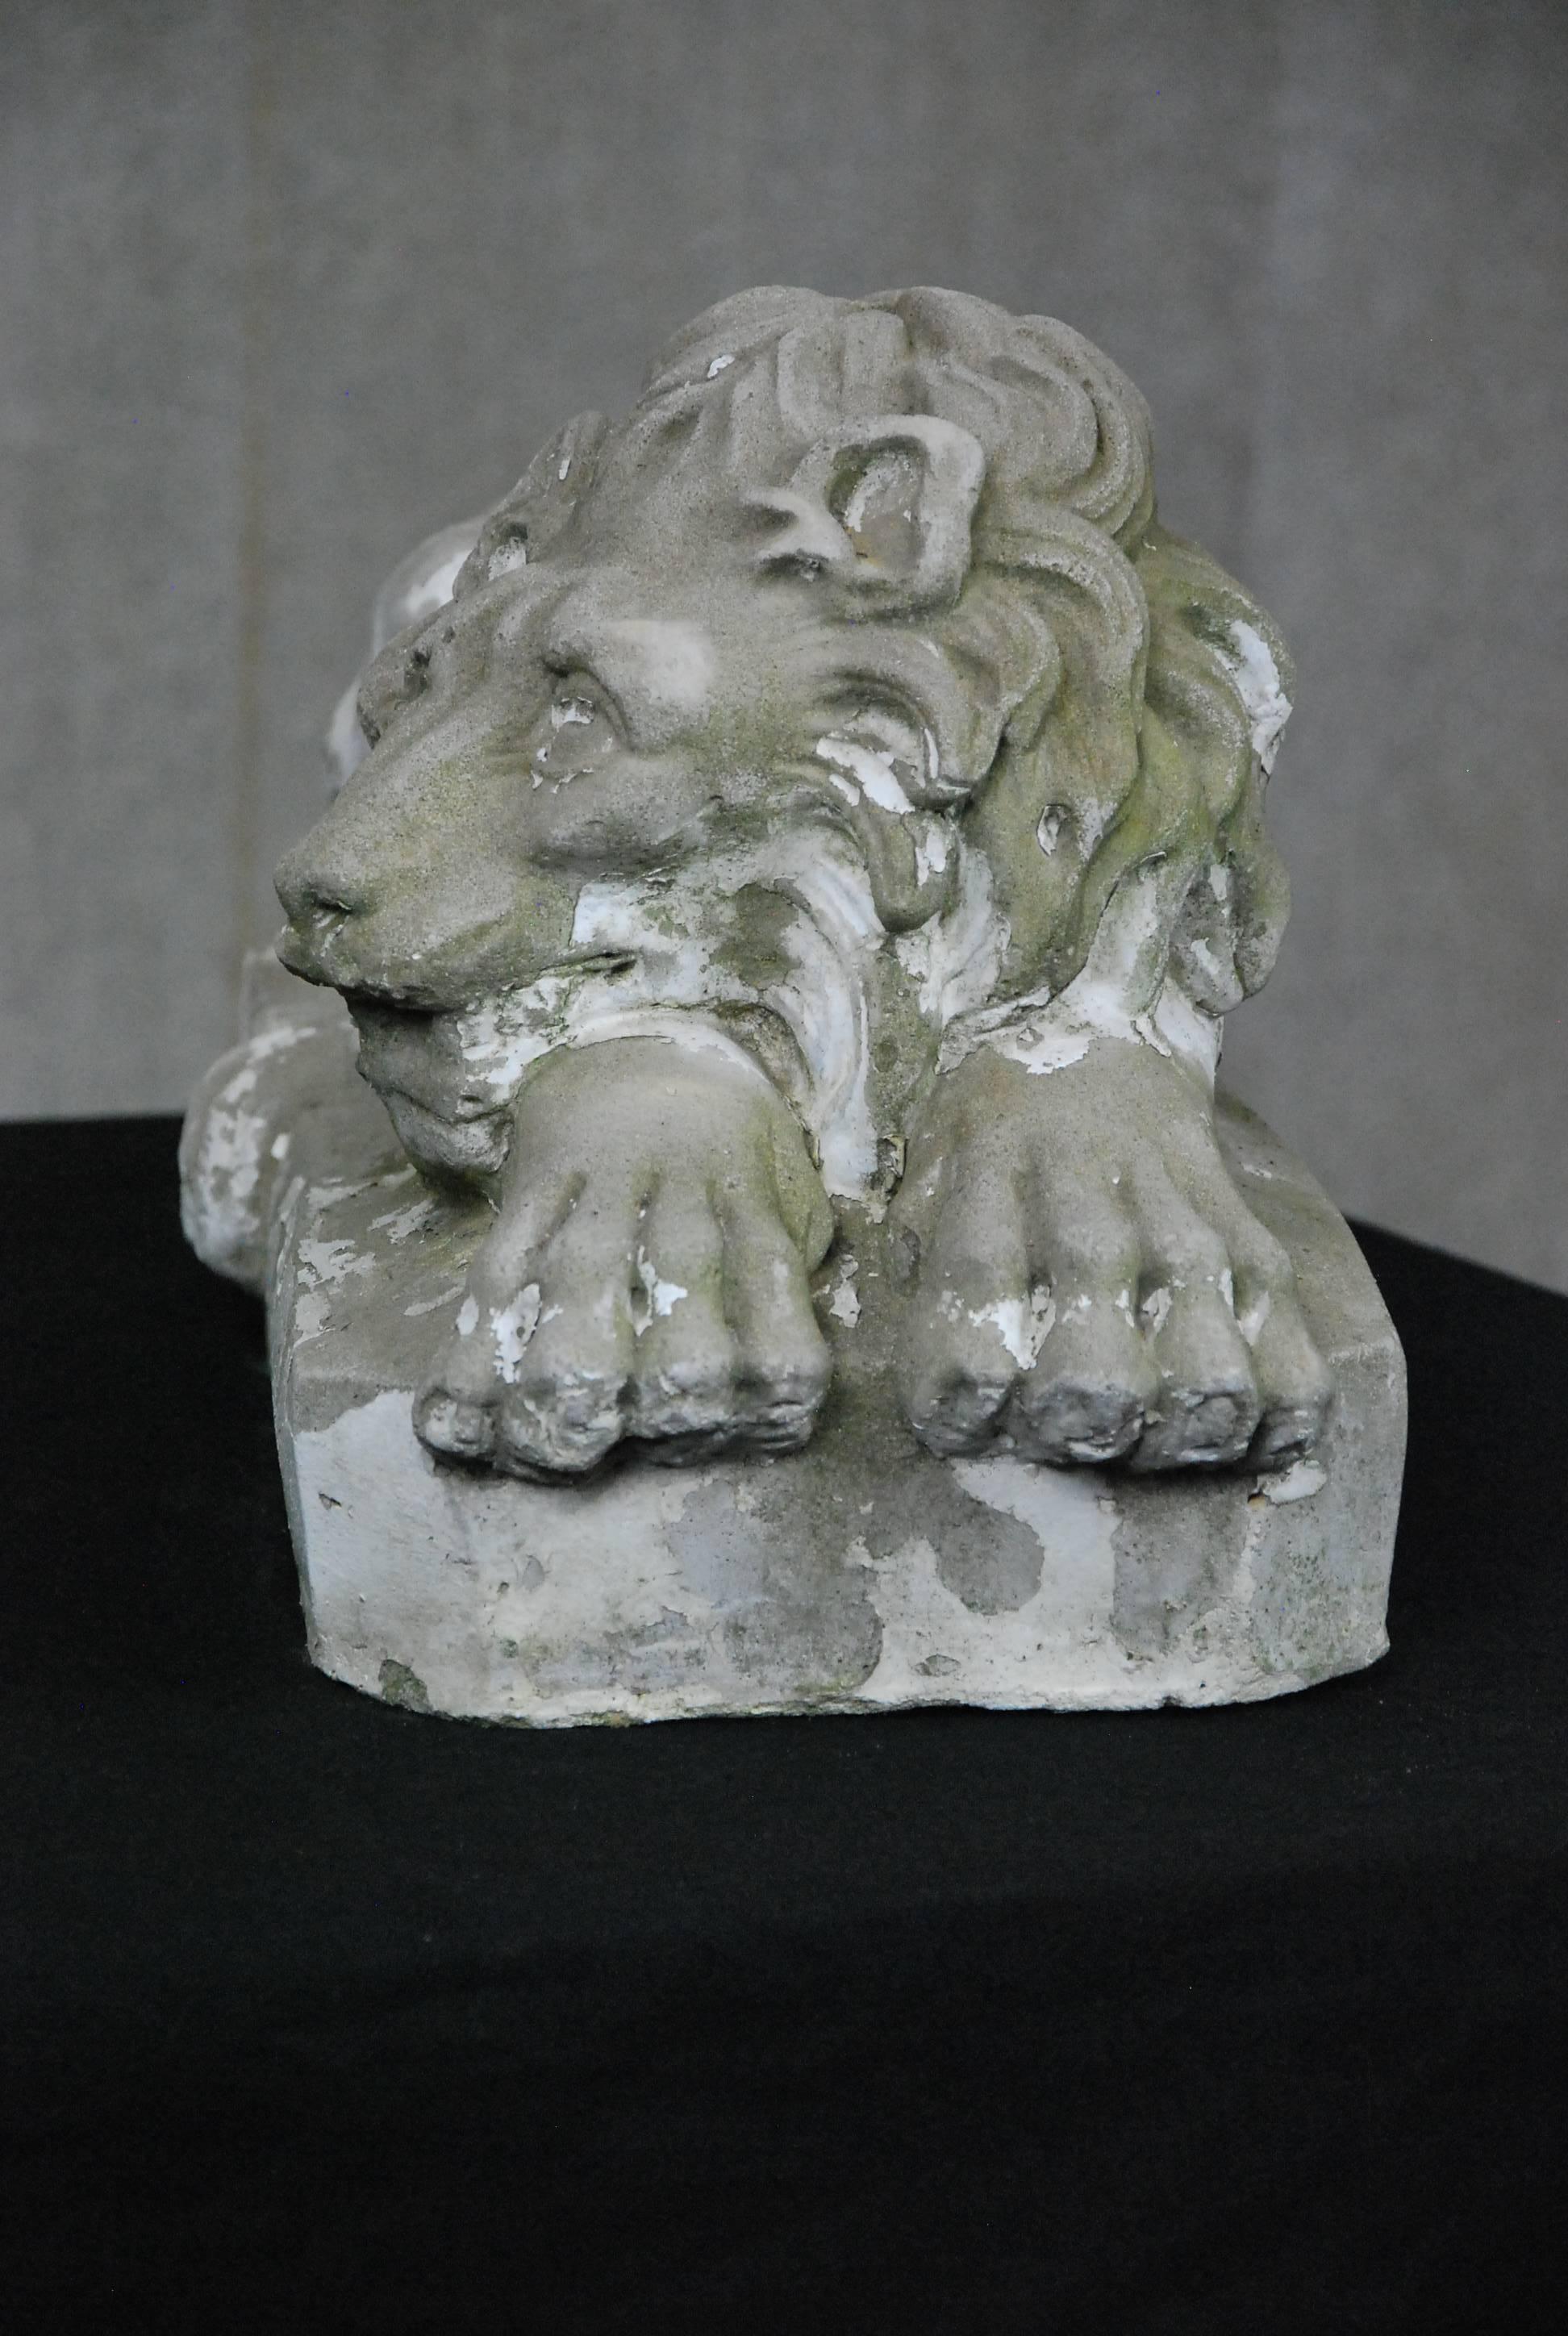 concrete lion statues pair